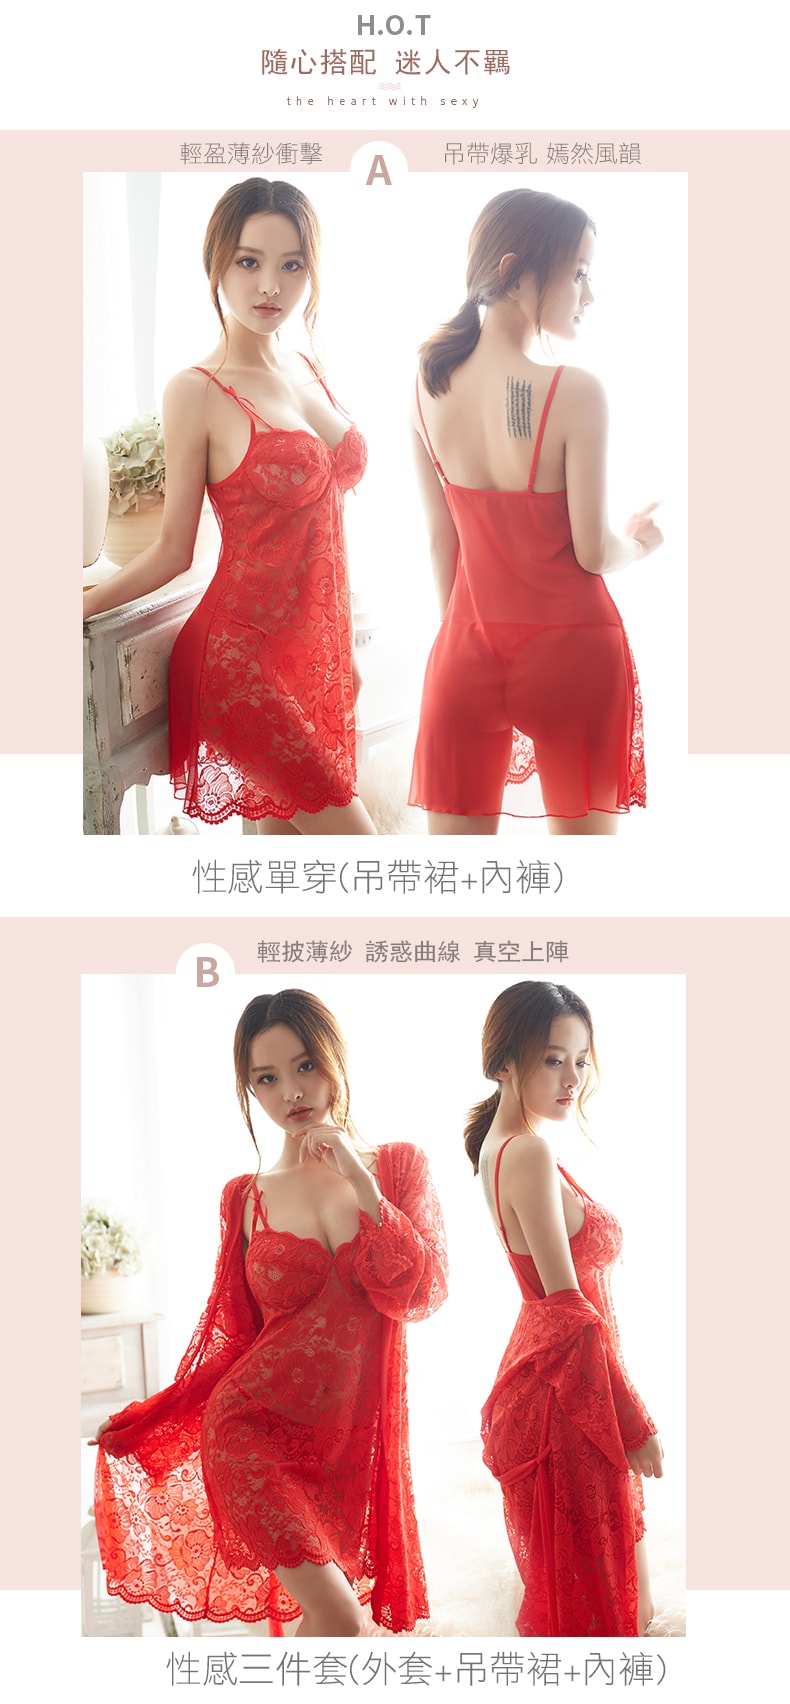 【中国直邮】久慕雅黛 法式华丽全蕾丝三件式睡衣组。黑色 M码